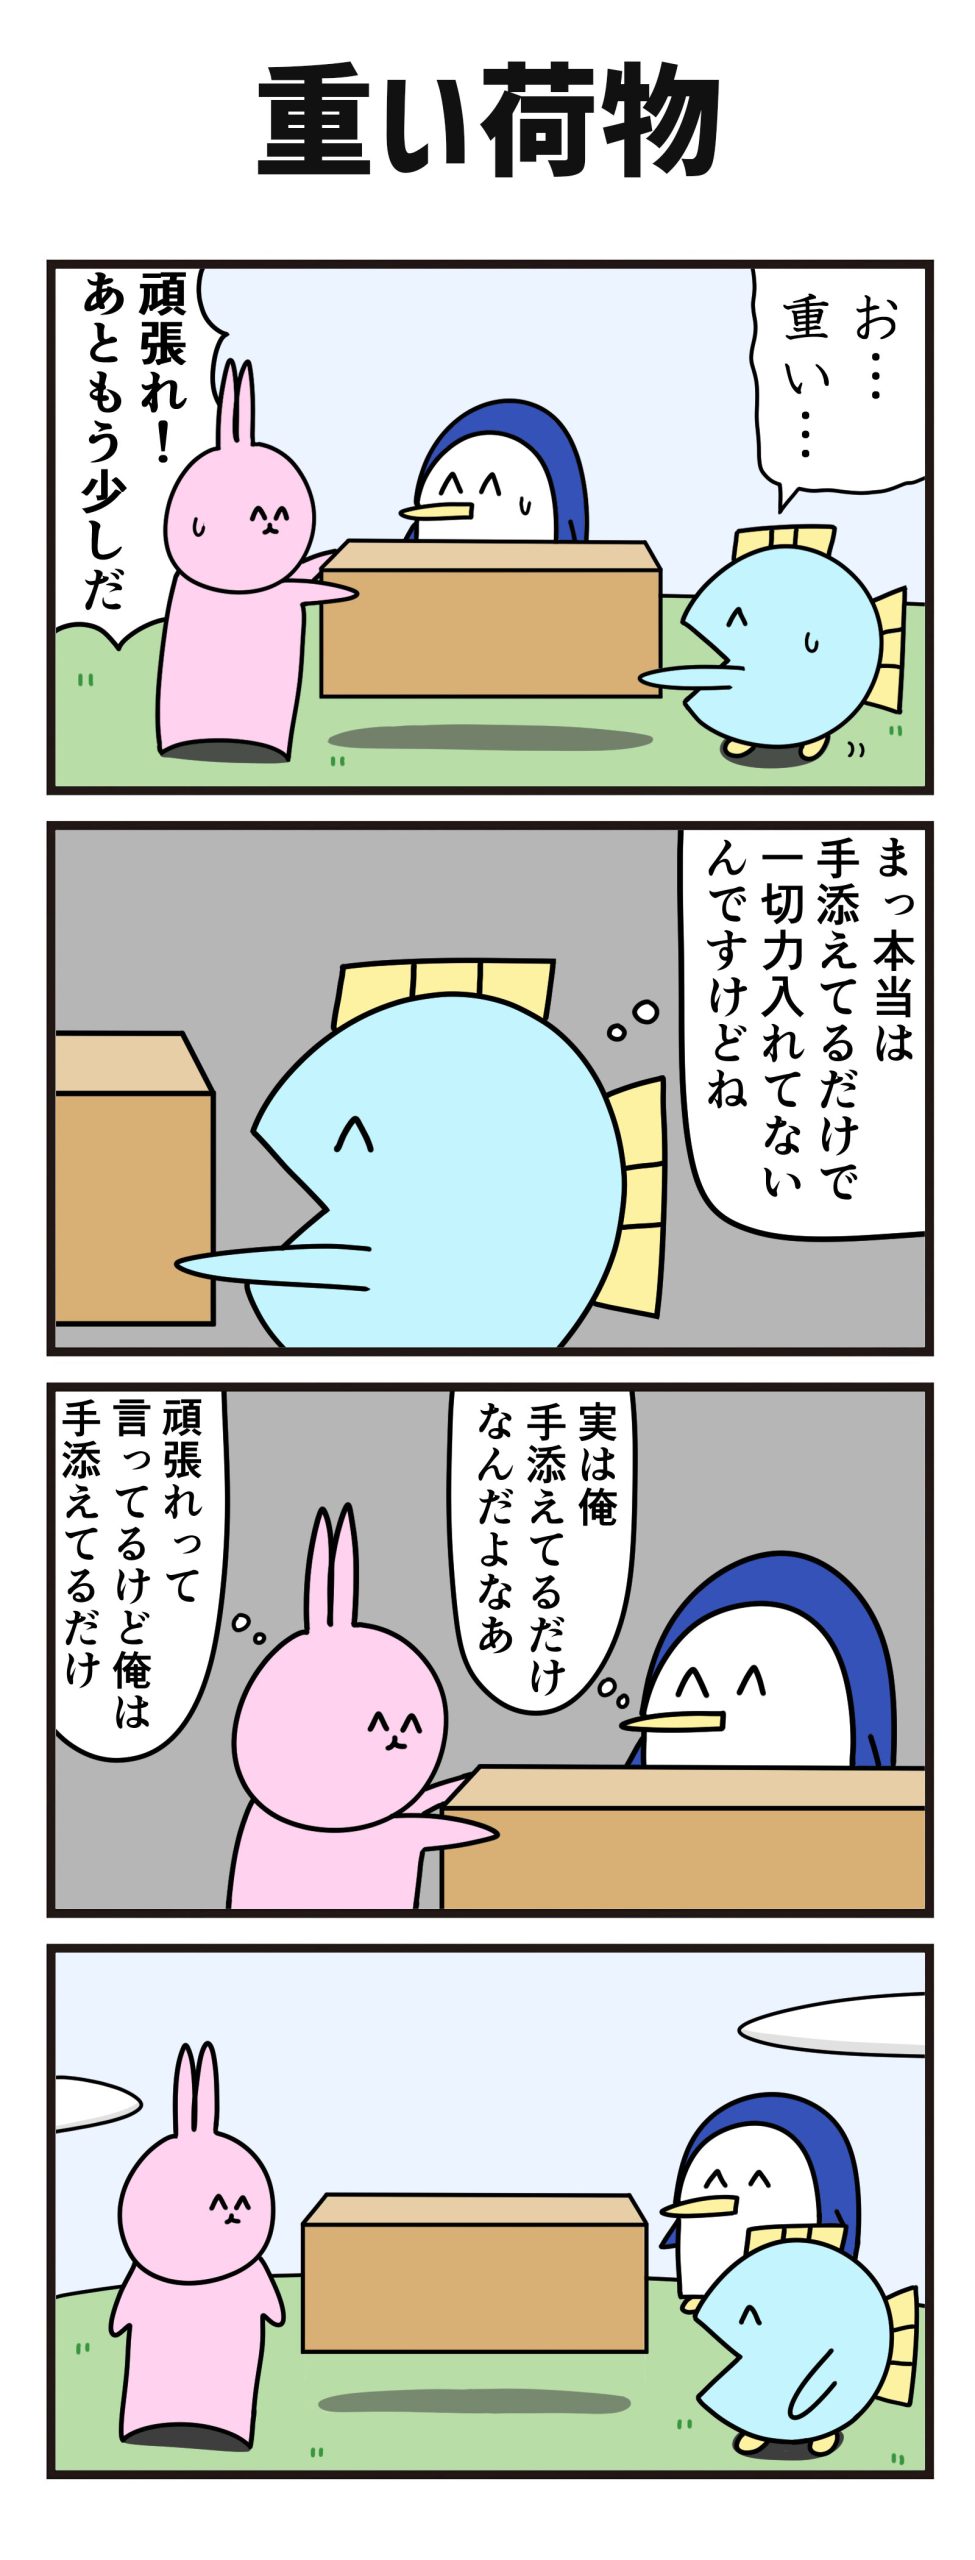 【ニョペ茄子】4コマ漫画「重い荷物」